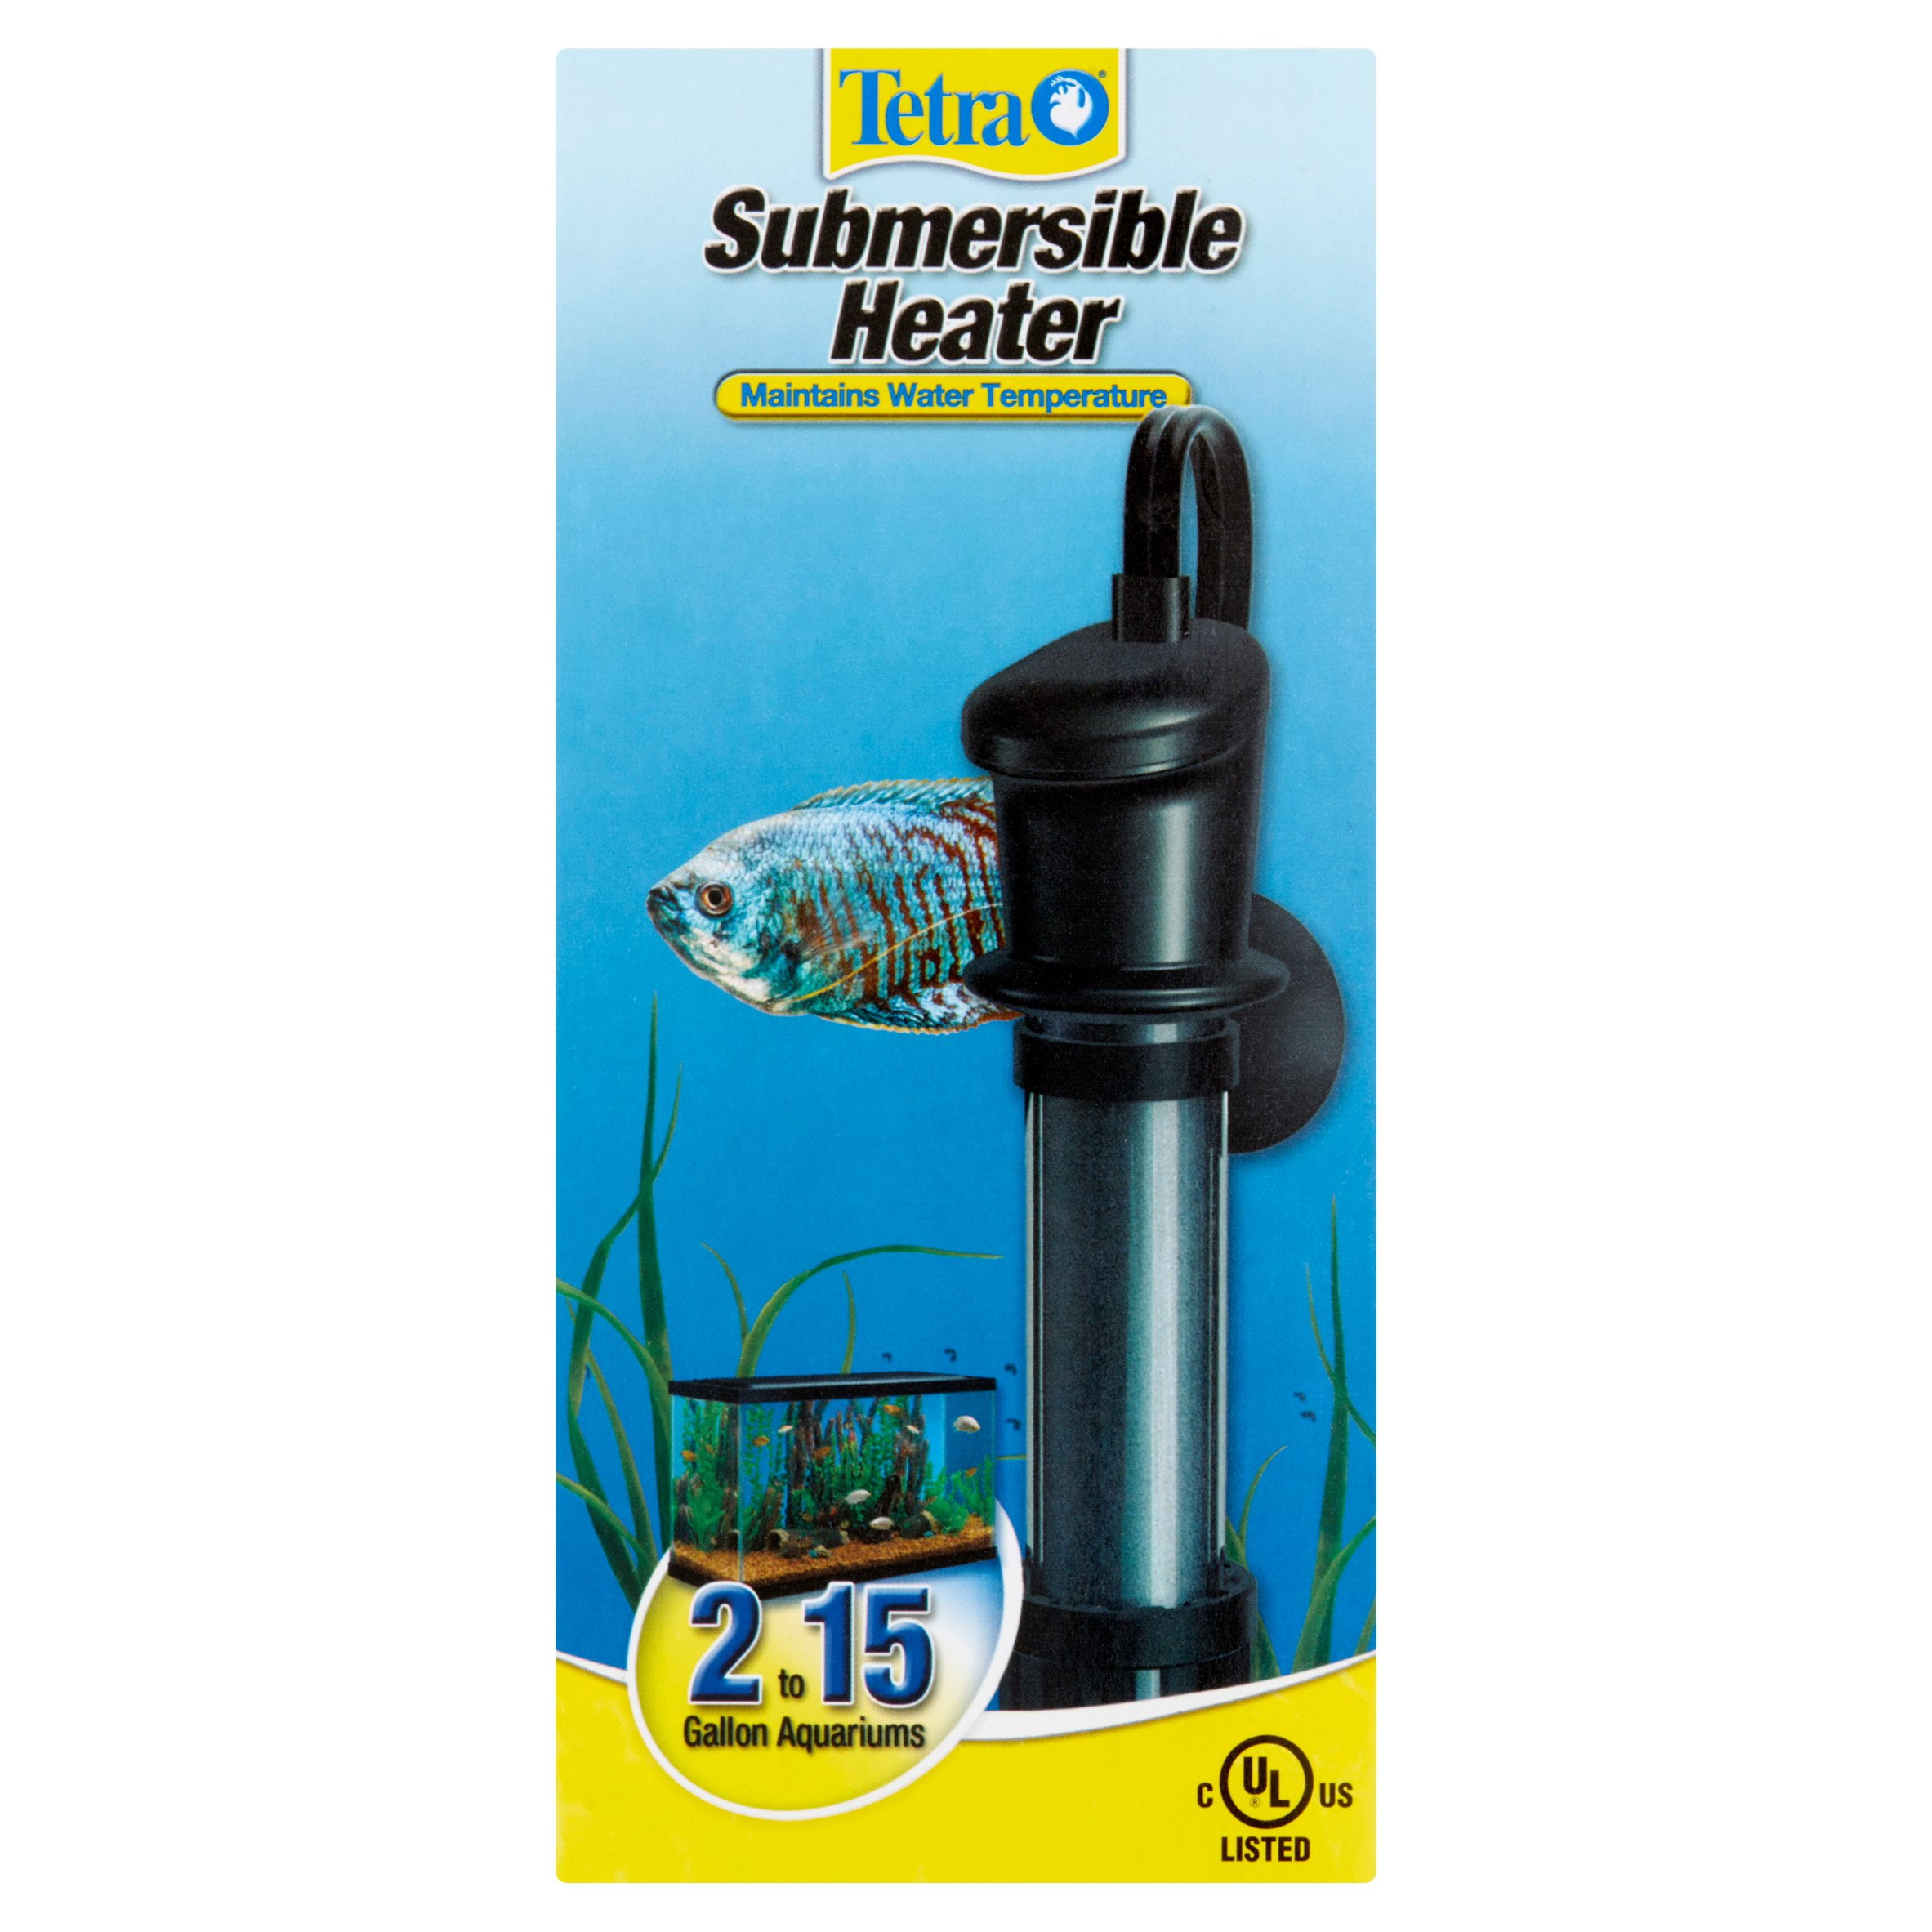 Fish R Fun 300 W Submersible Heater 350 g